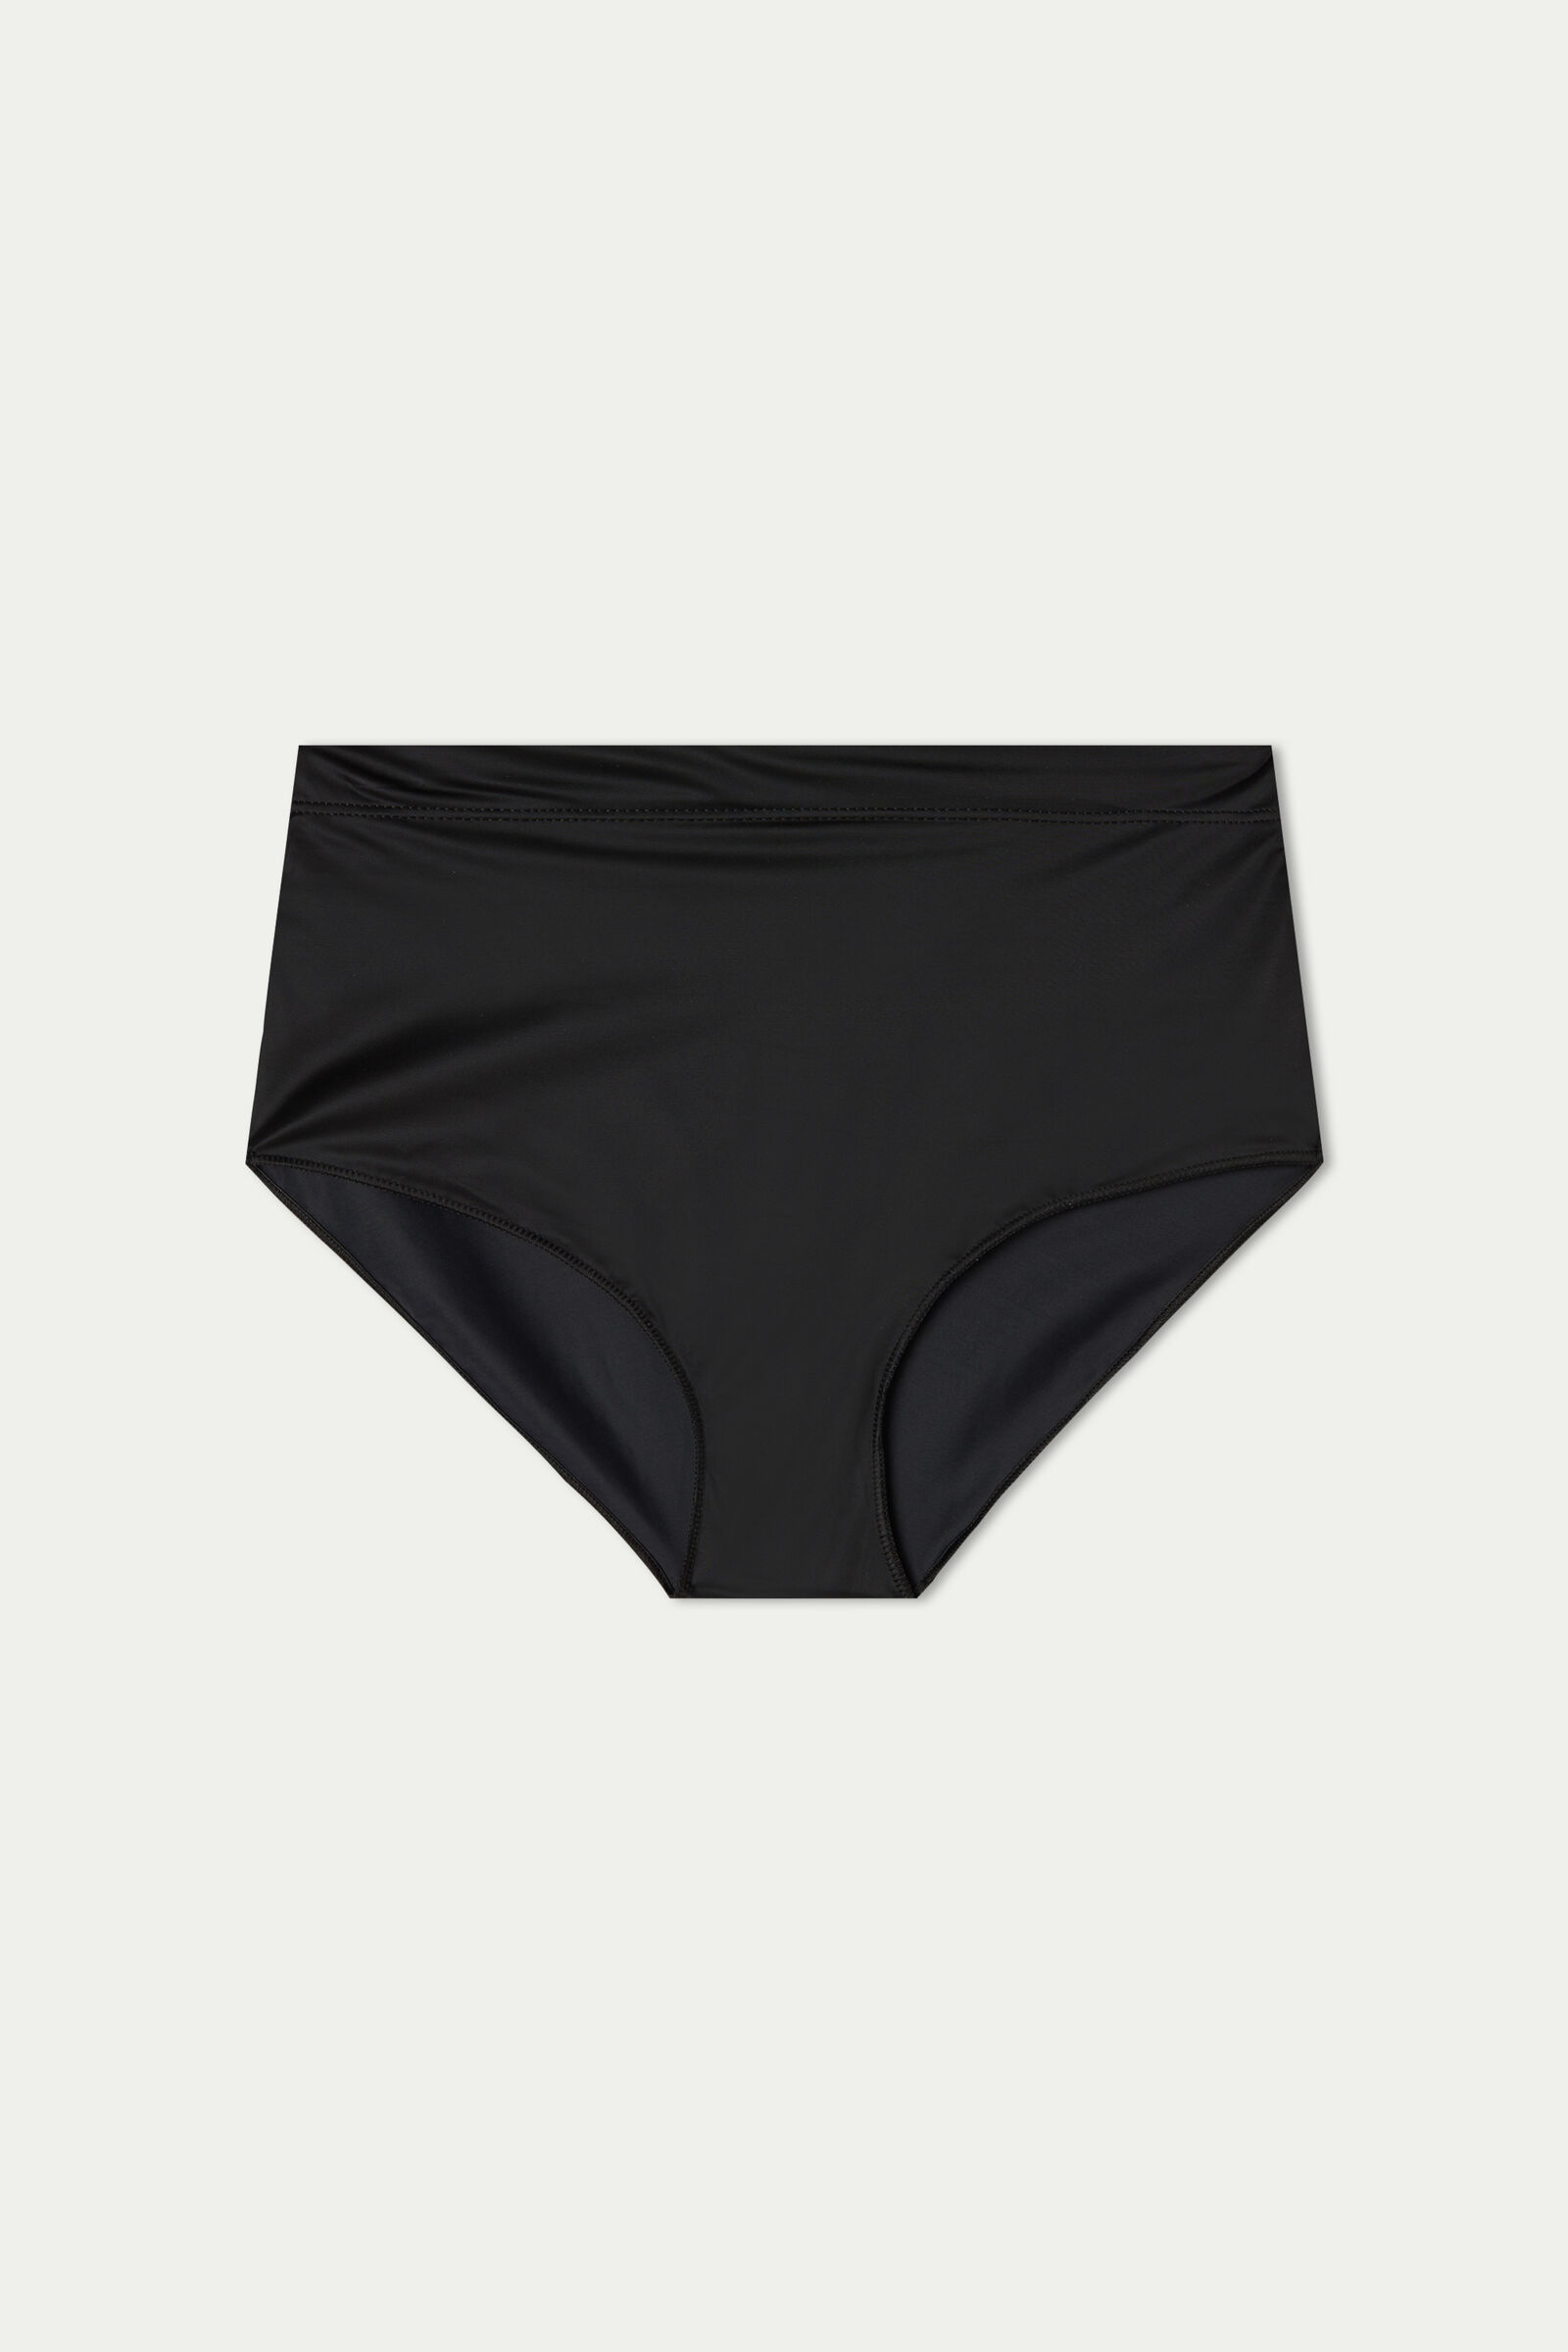 Unique New Ladies Underpants